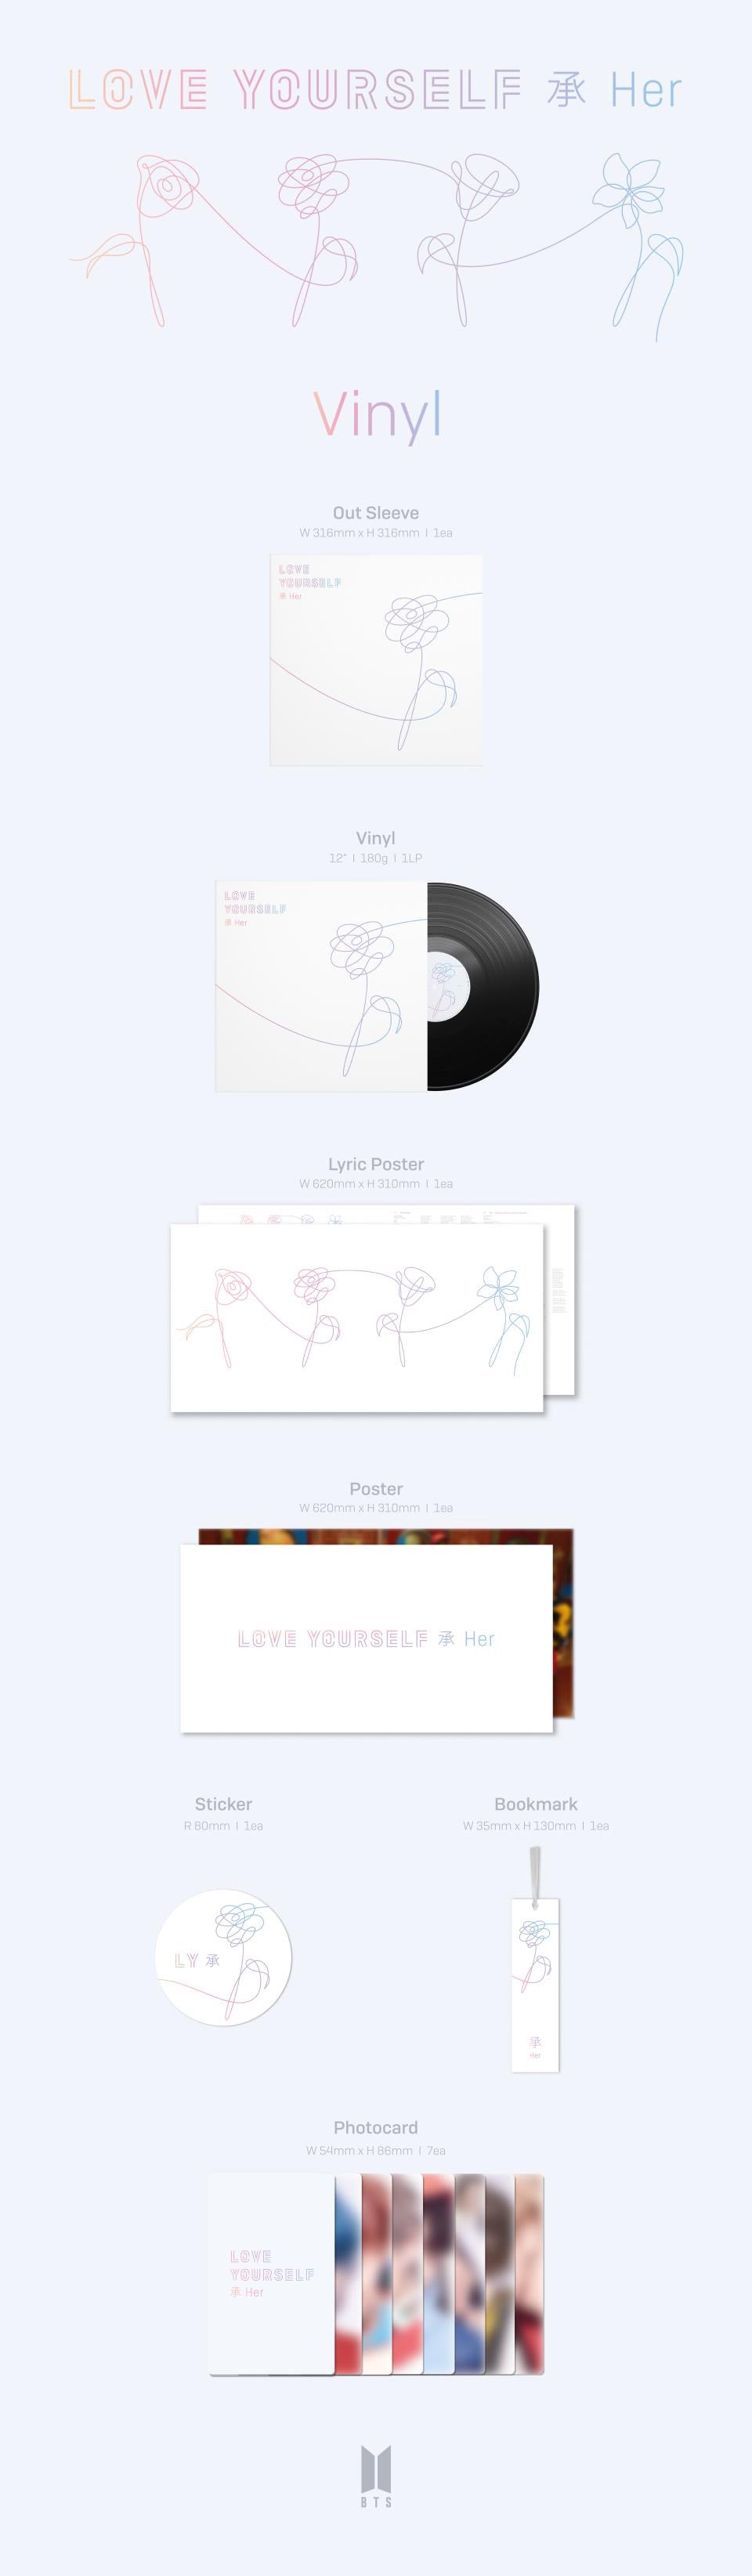 BTS Love Yourself Her LP